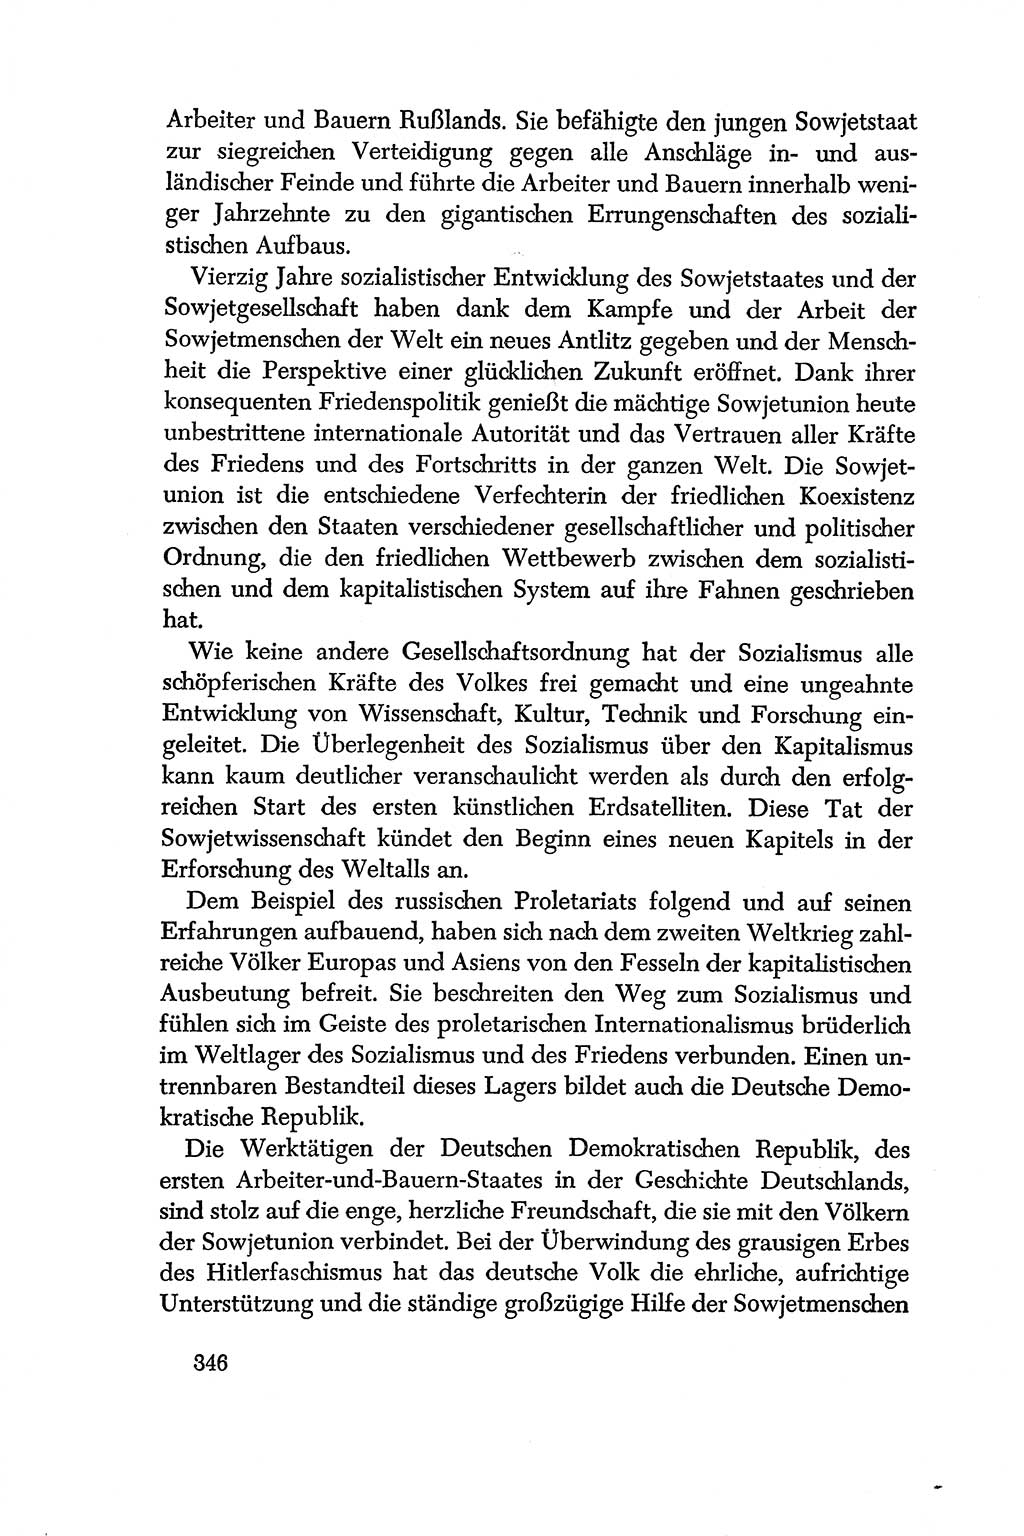 Dokumente der Sozialistischen Einheitspartei Deutschlands (SED) [Deutsche Demokratische Republik (DDR)] 1956-1957, Seite 346 (Dok. SED DDR 1956-1957, S. 346)